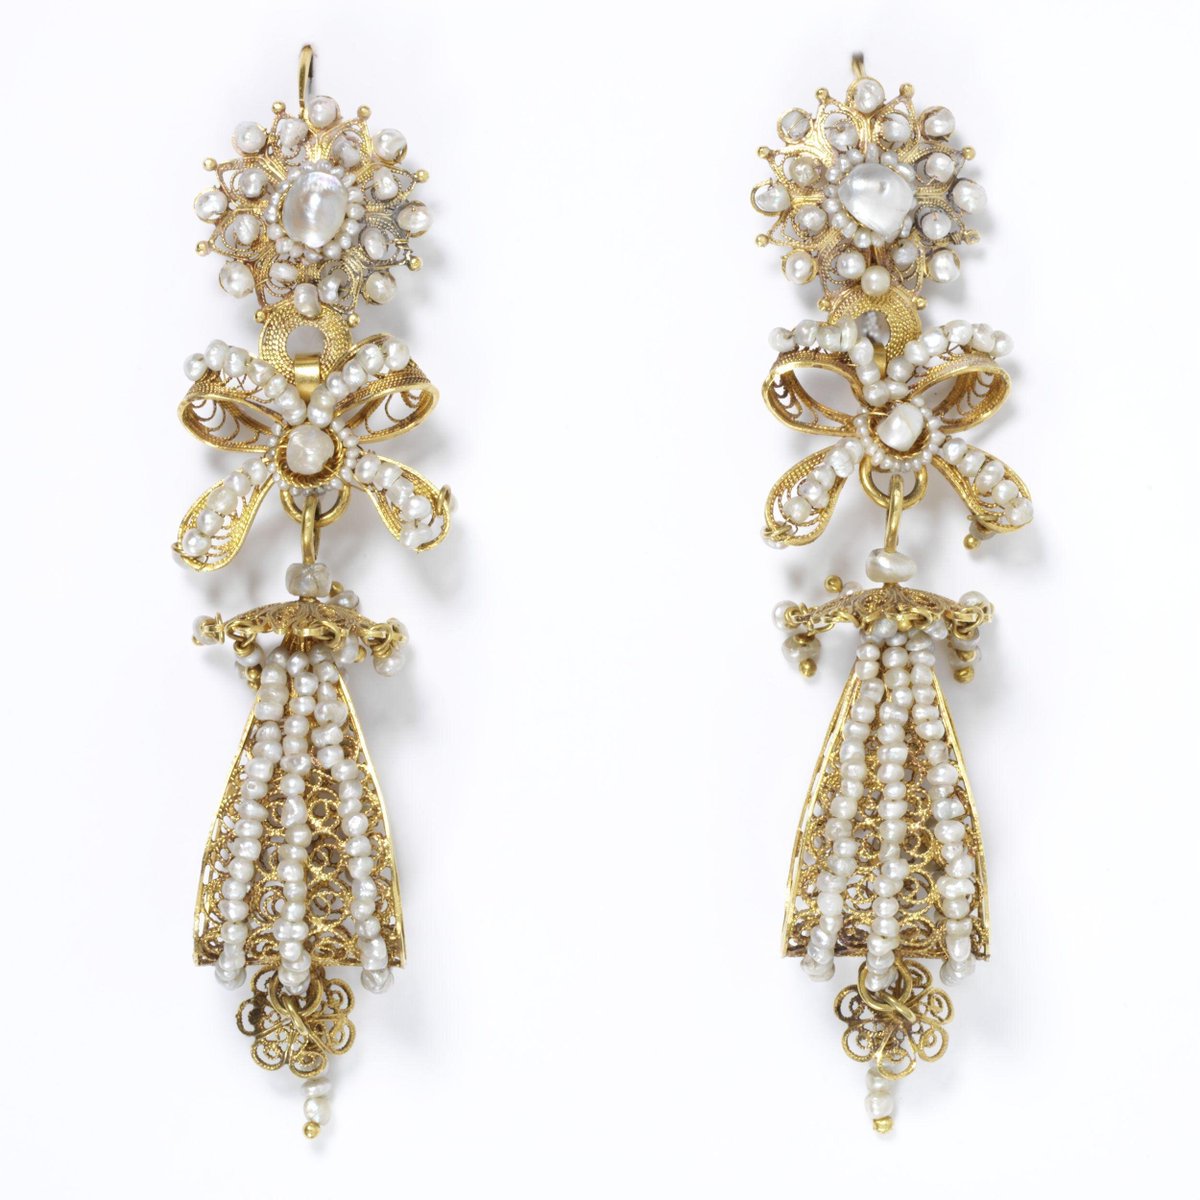 Pair of long gold filigree earrings set with pearls, Salamanca (Spain), 1800-70. Victoria & Albert Museum.